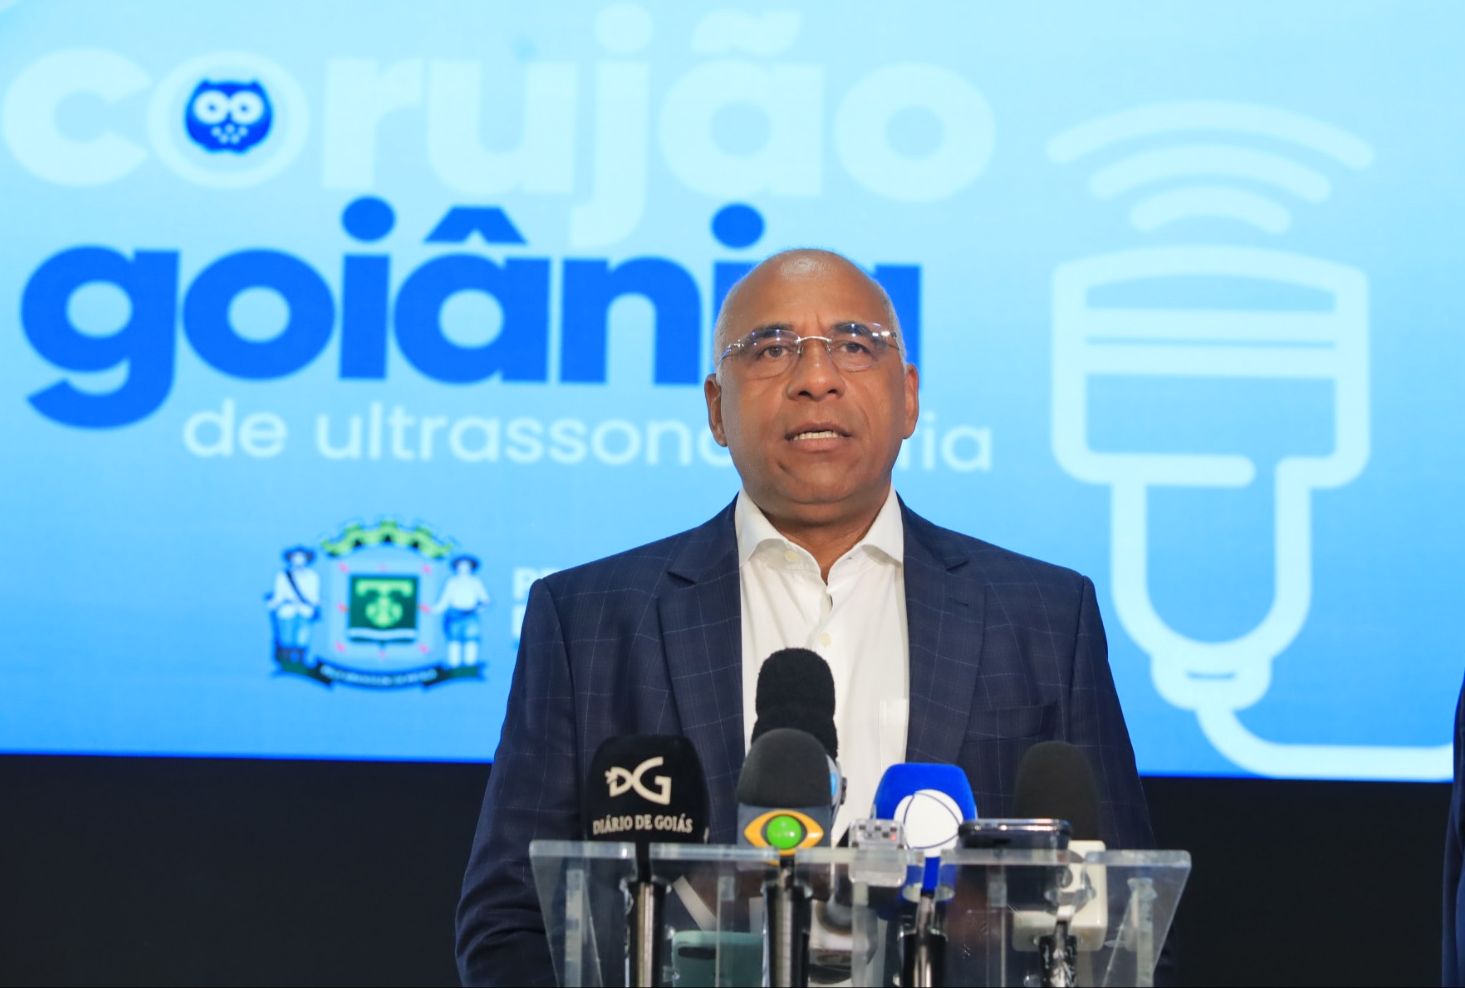 Corujão de Ultrassonografia lançado pelo prefeito Rogério vai garantir atendimento de pacientes em horários alternativos, especialmente no período noturno